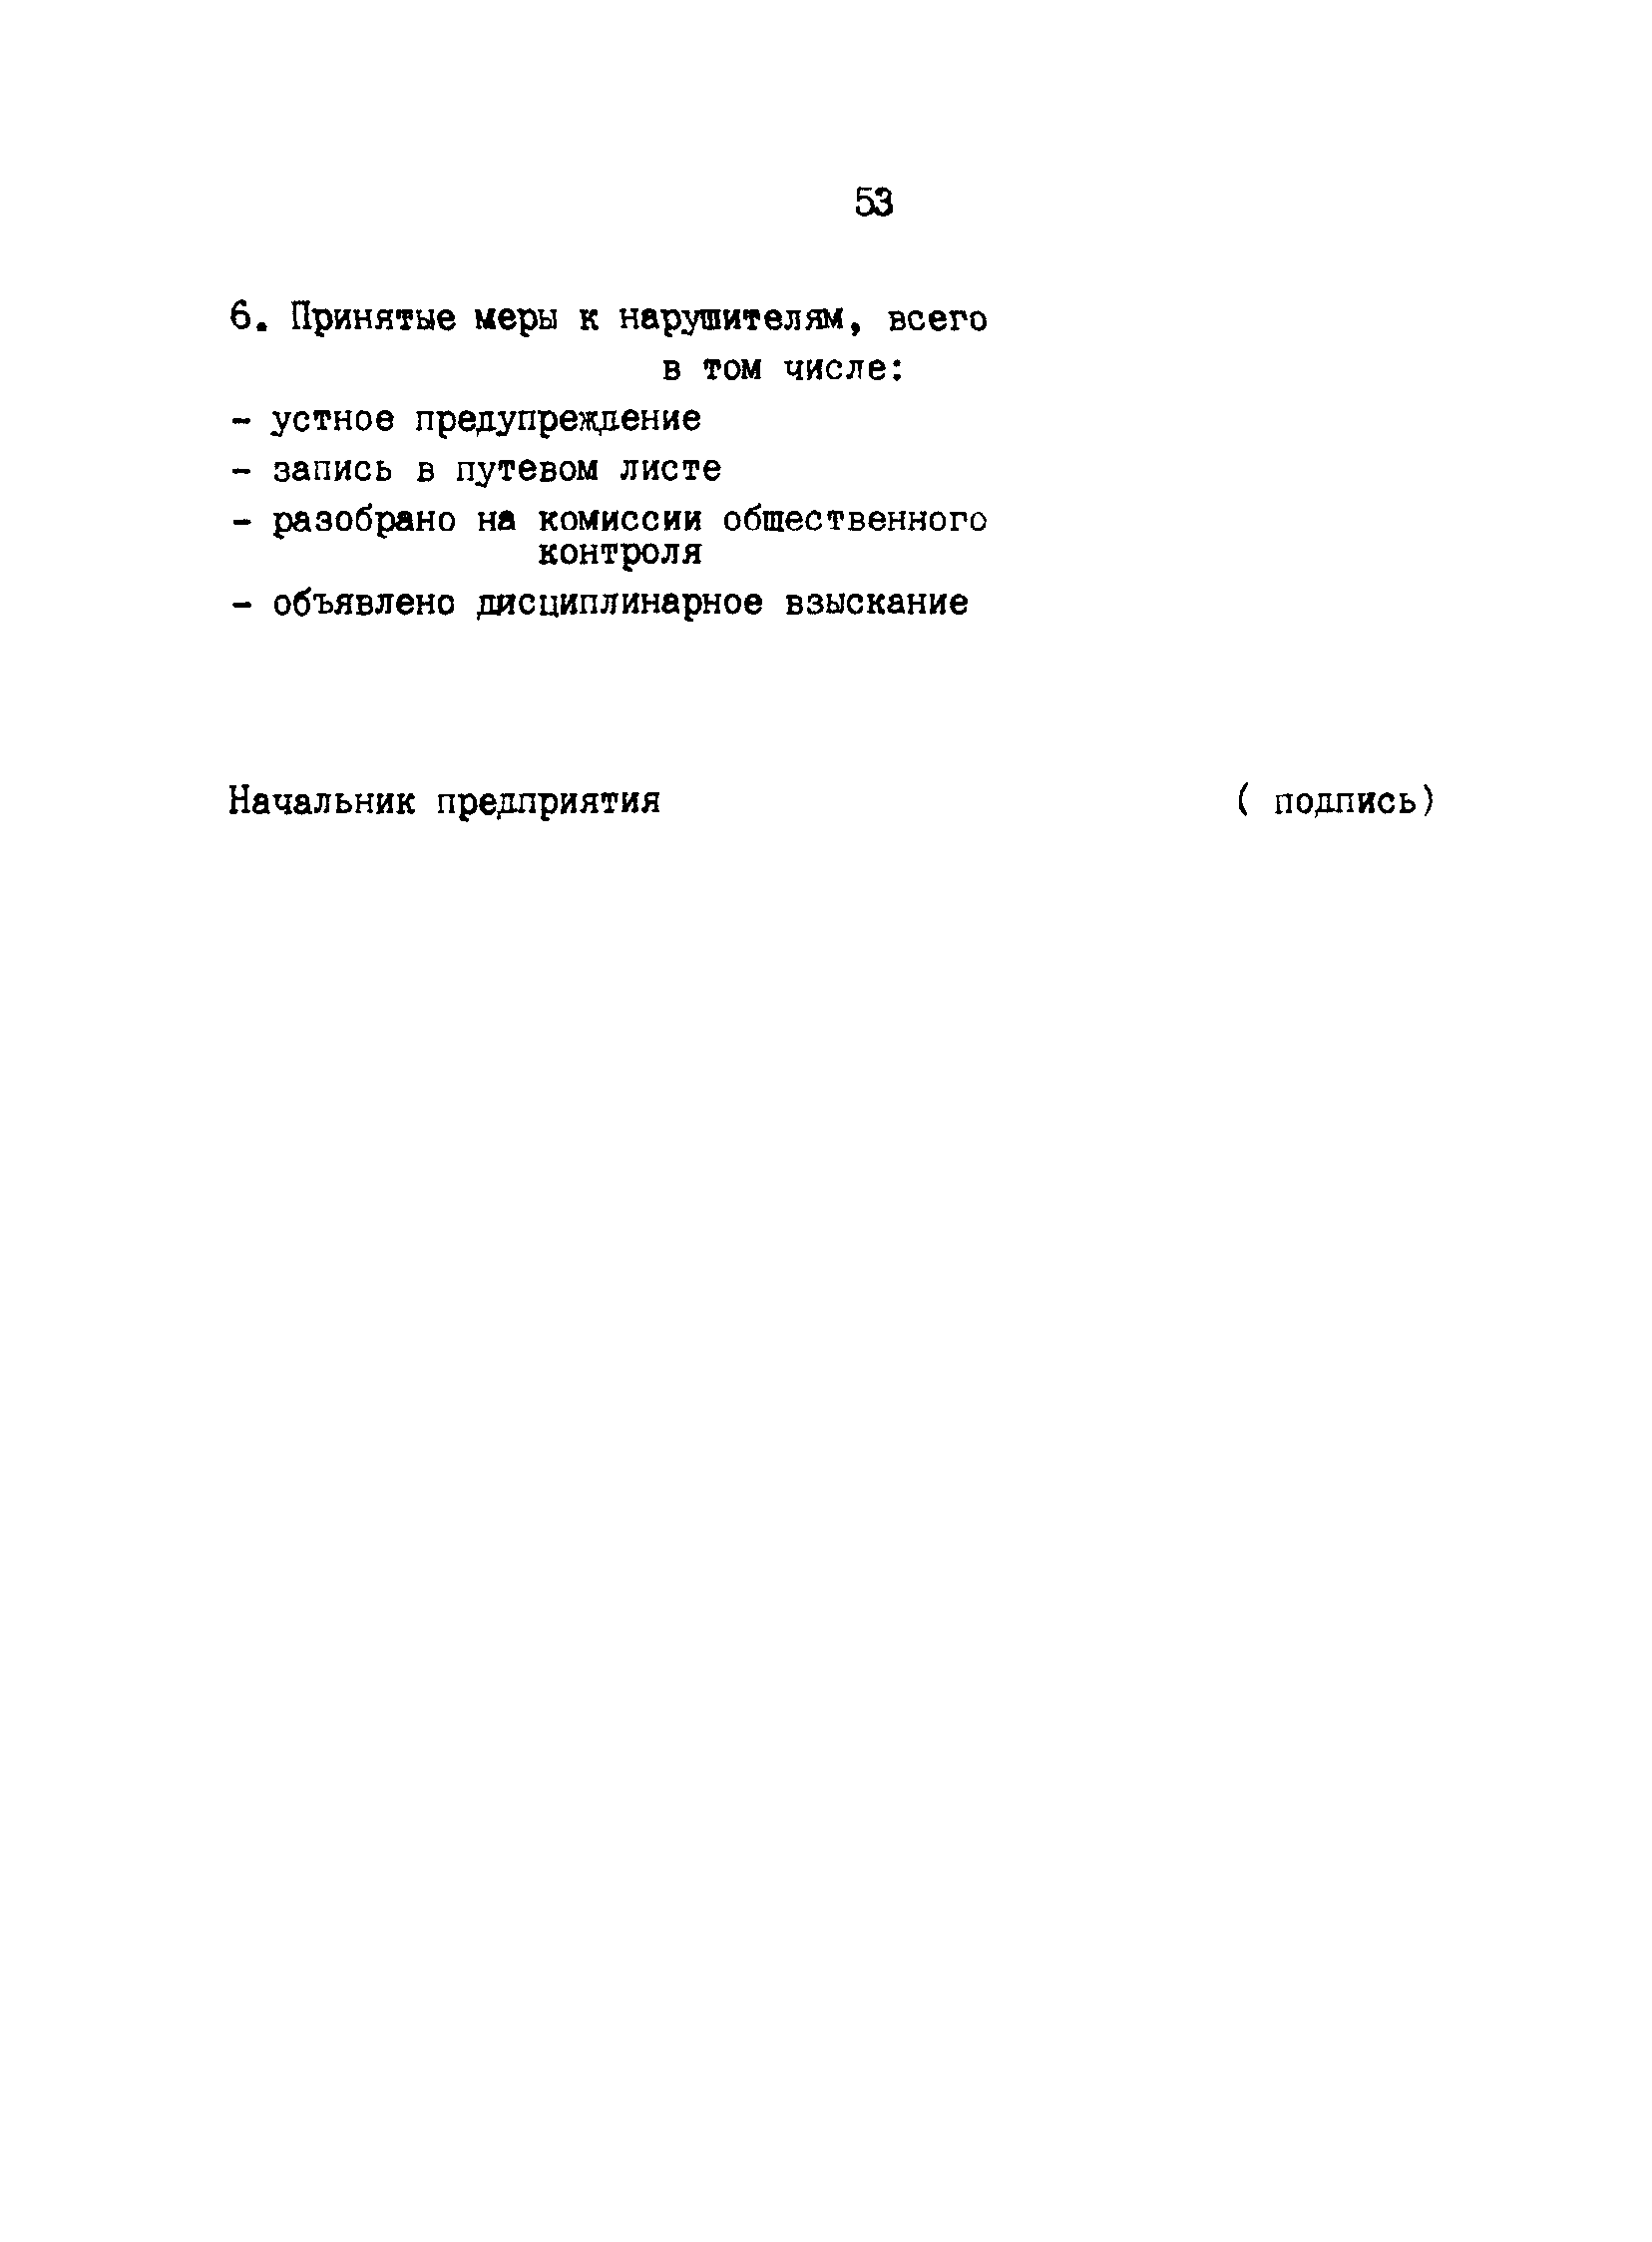 РД 200-РСФСР-12-0071-86-04